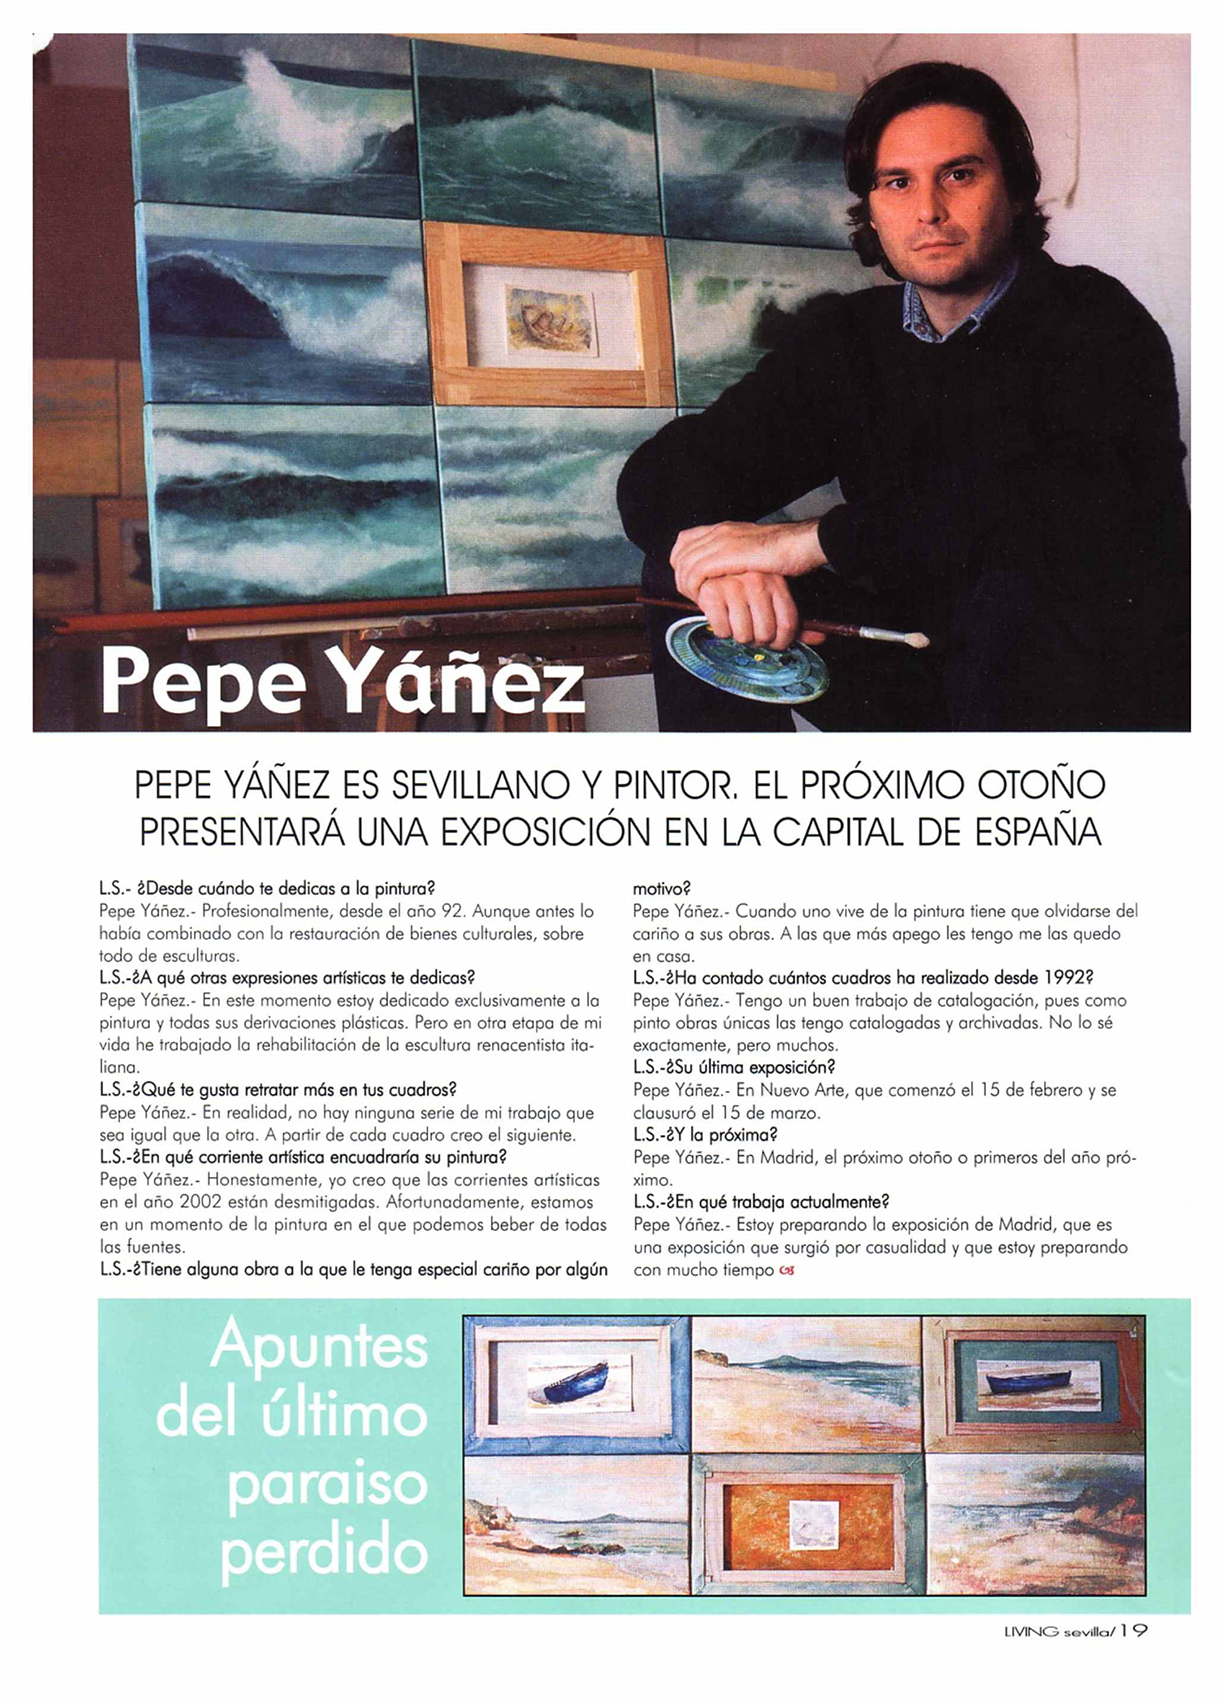 Pepe Yáñez: Apuntes del último paraíso perdido